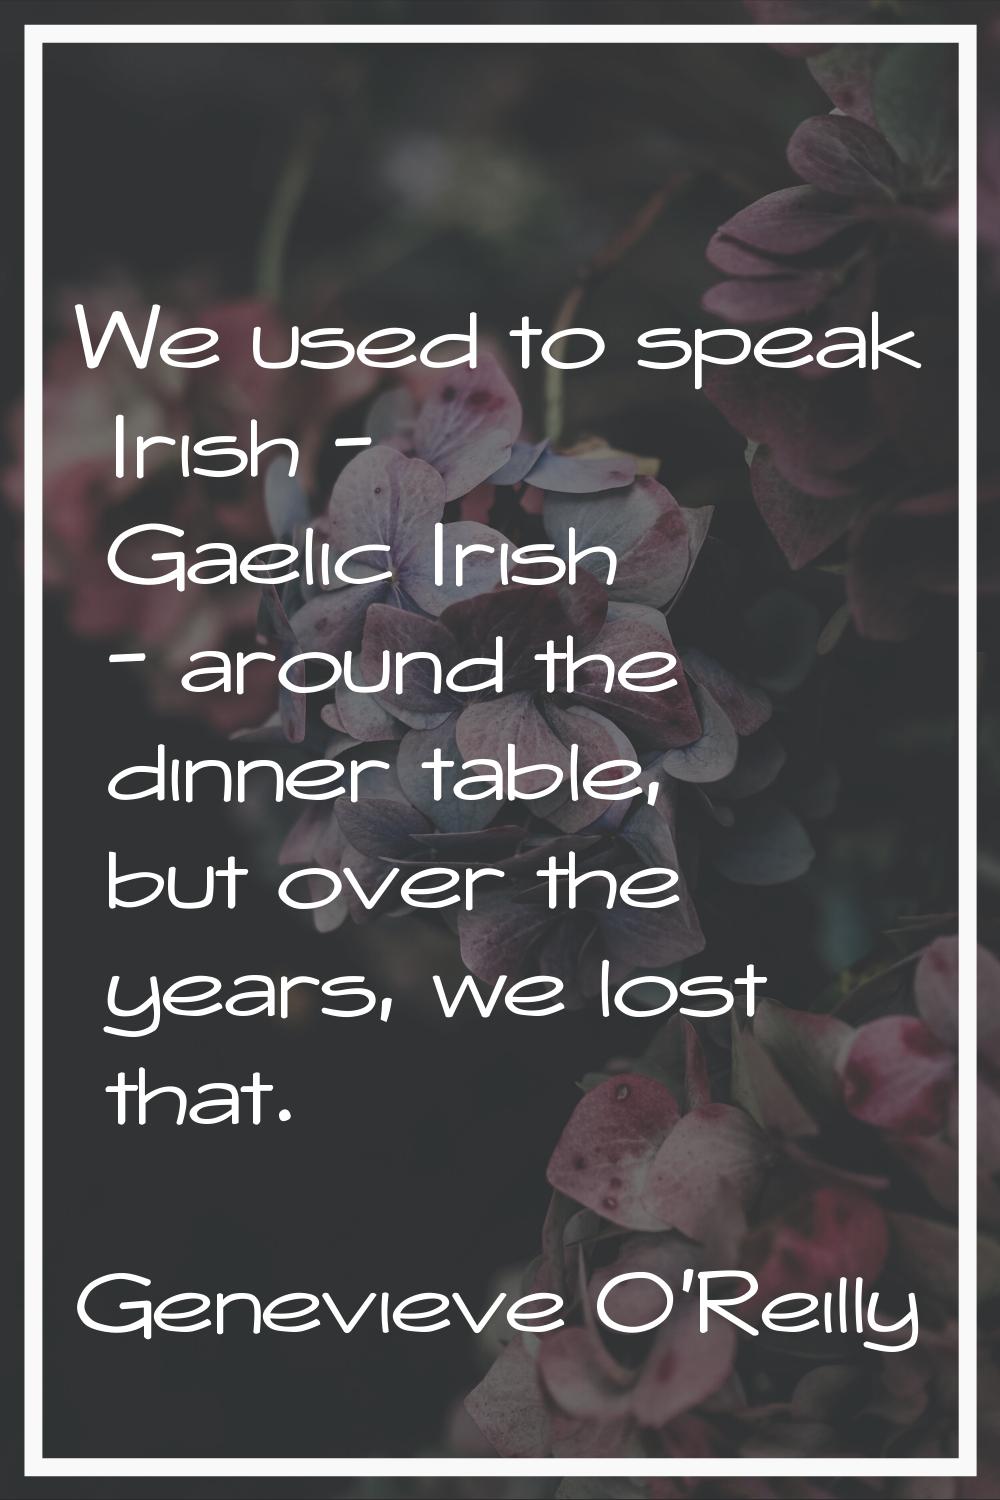 We used to speak Irish - Gaelic Irish - around the dinner table, but over the years, we lost that.